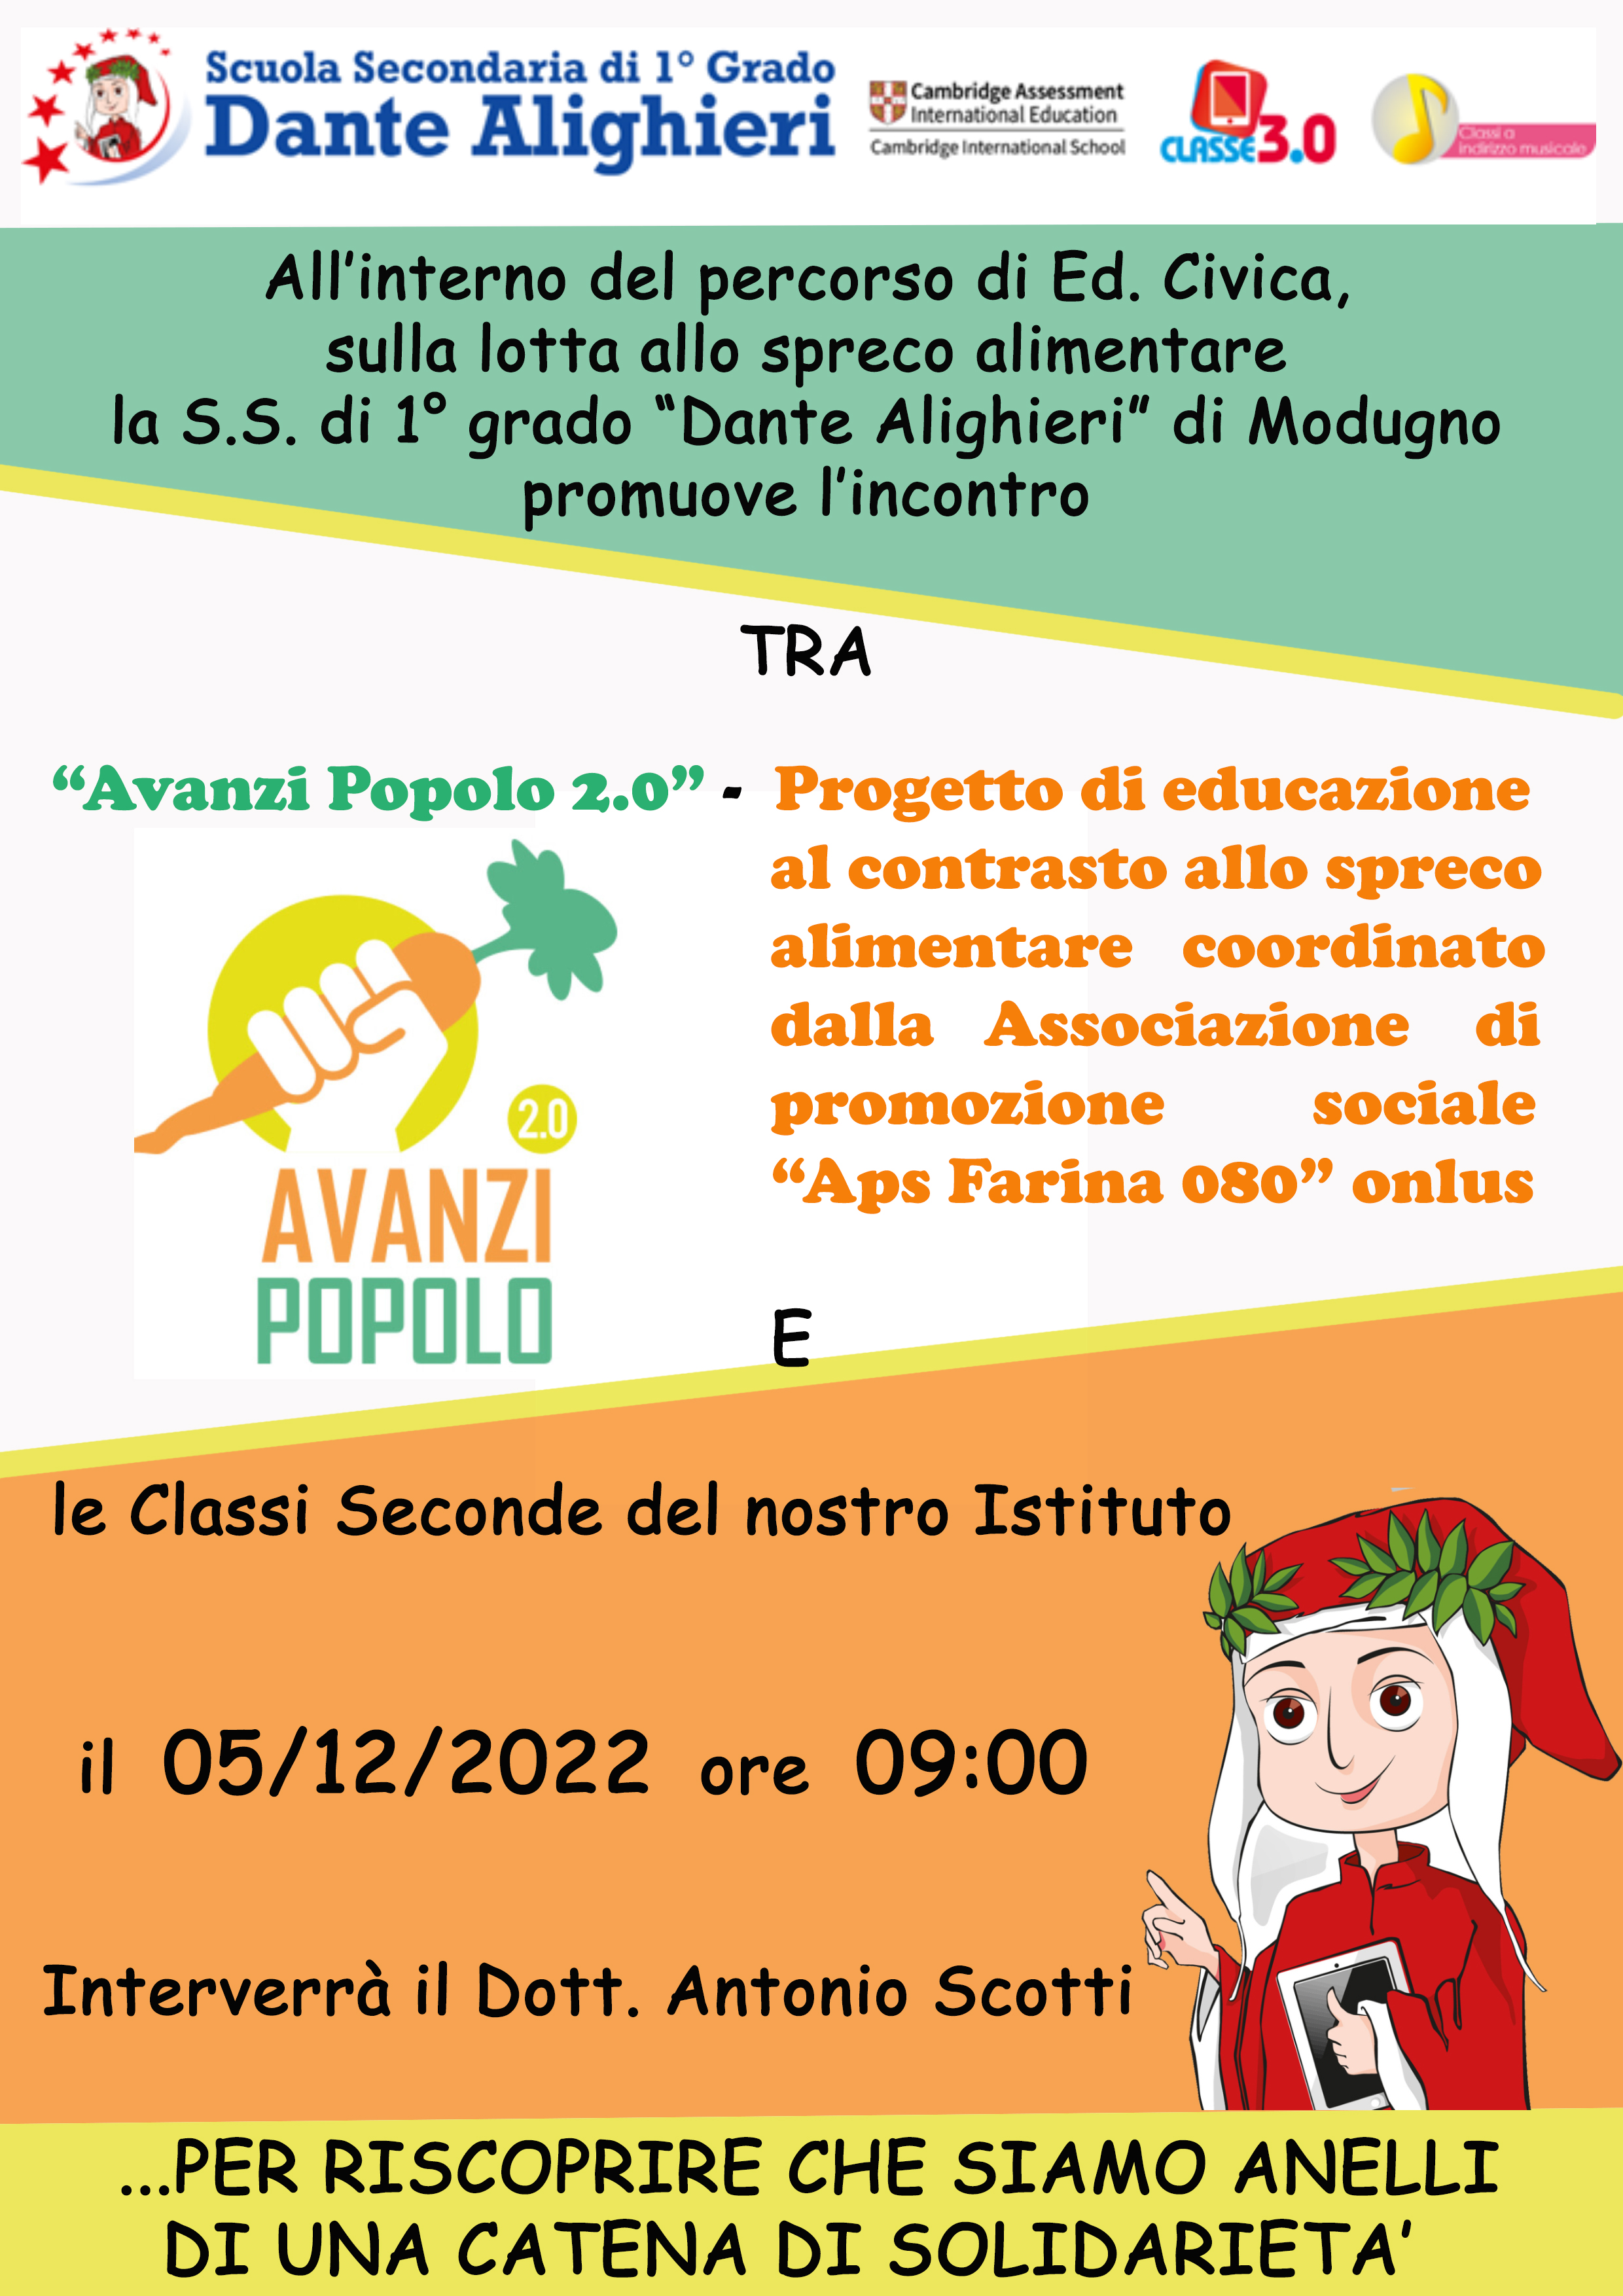 "AVANZI POPOLO 2.0" PROGETTO DI EDUCAZIONE AL CONTRASTO ALLO SPRECO ALIMENTARE.